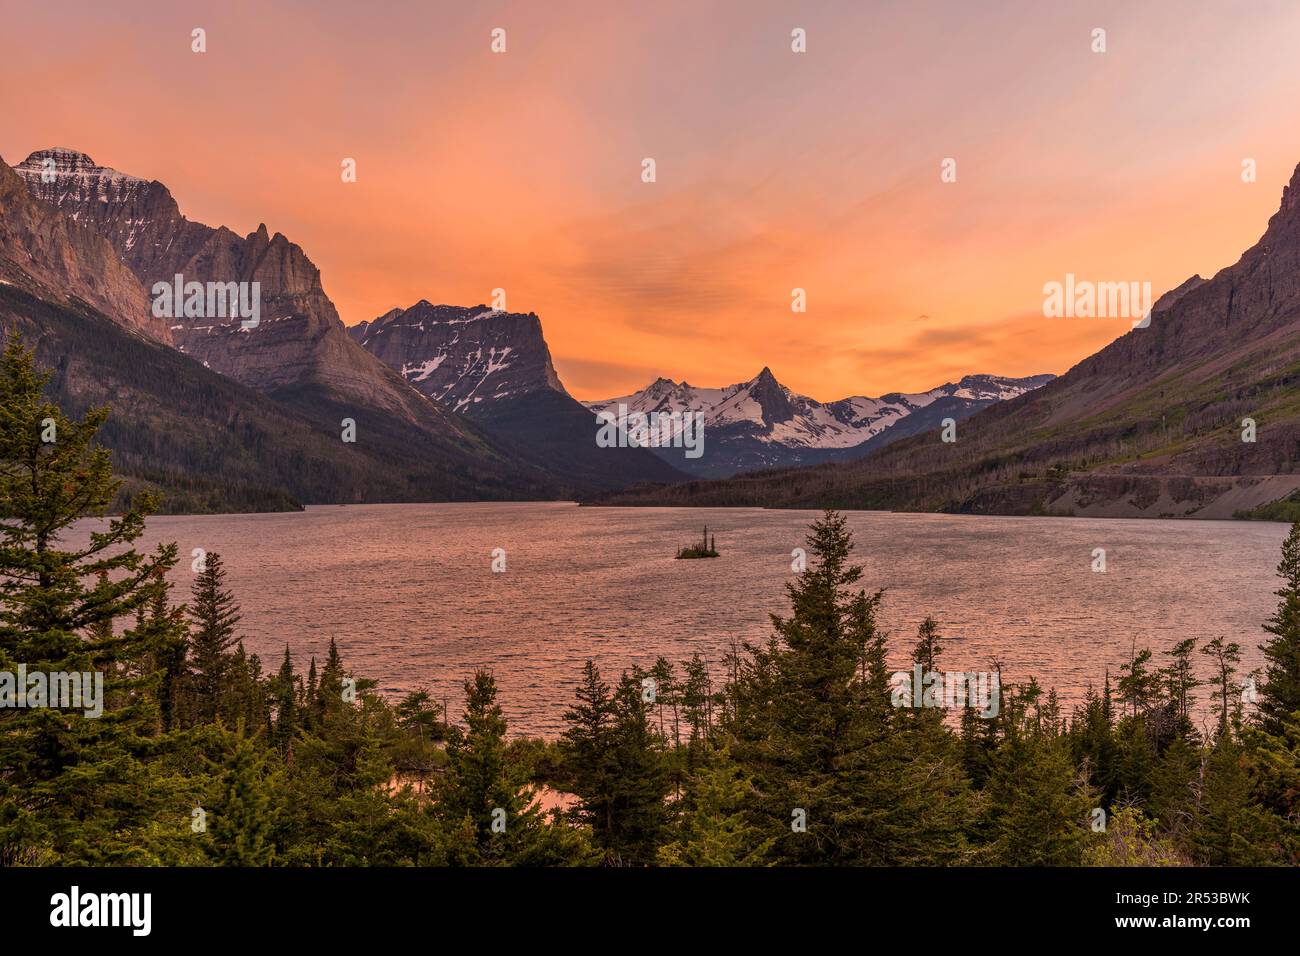 Coucher de soleil sur le lac Saint Mary - Vue panoramique du printemps coucher de soleil sur le lac Saint Mary et ses montagnes abruptes environnantes, parc national Glacier, Montana, États-Unis. Banque D'Images